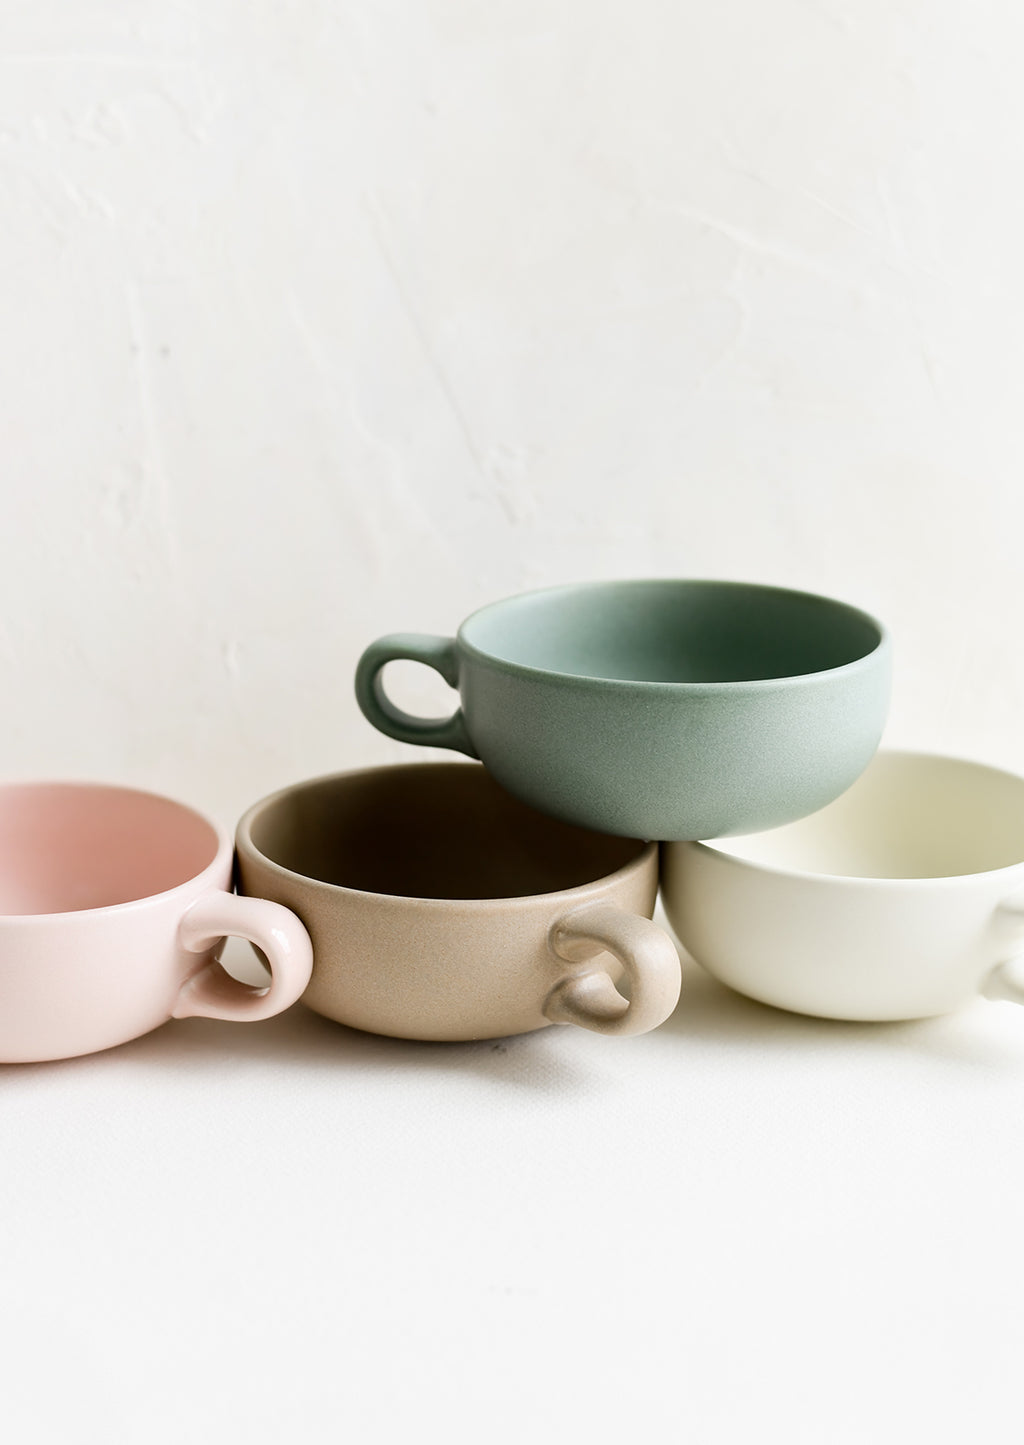 5: Assorted colors of ceramic mug bowls.